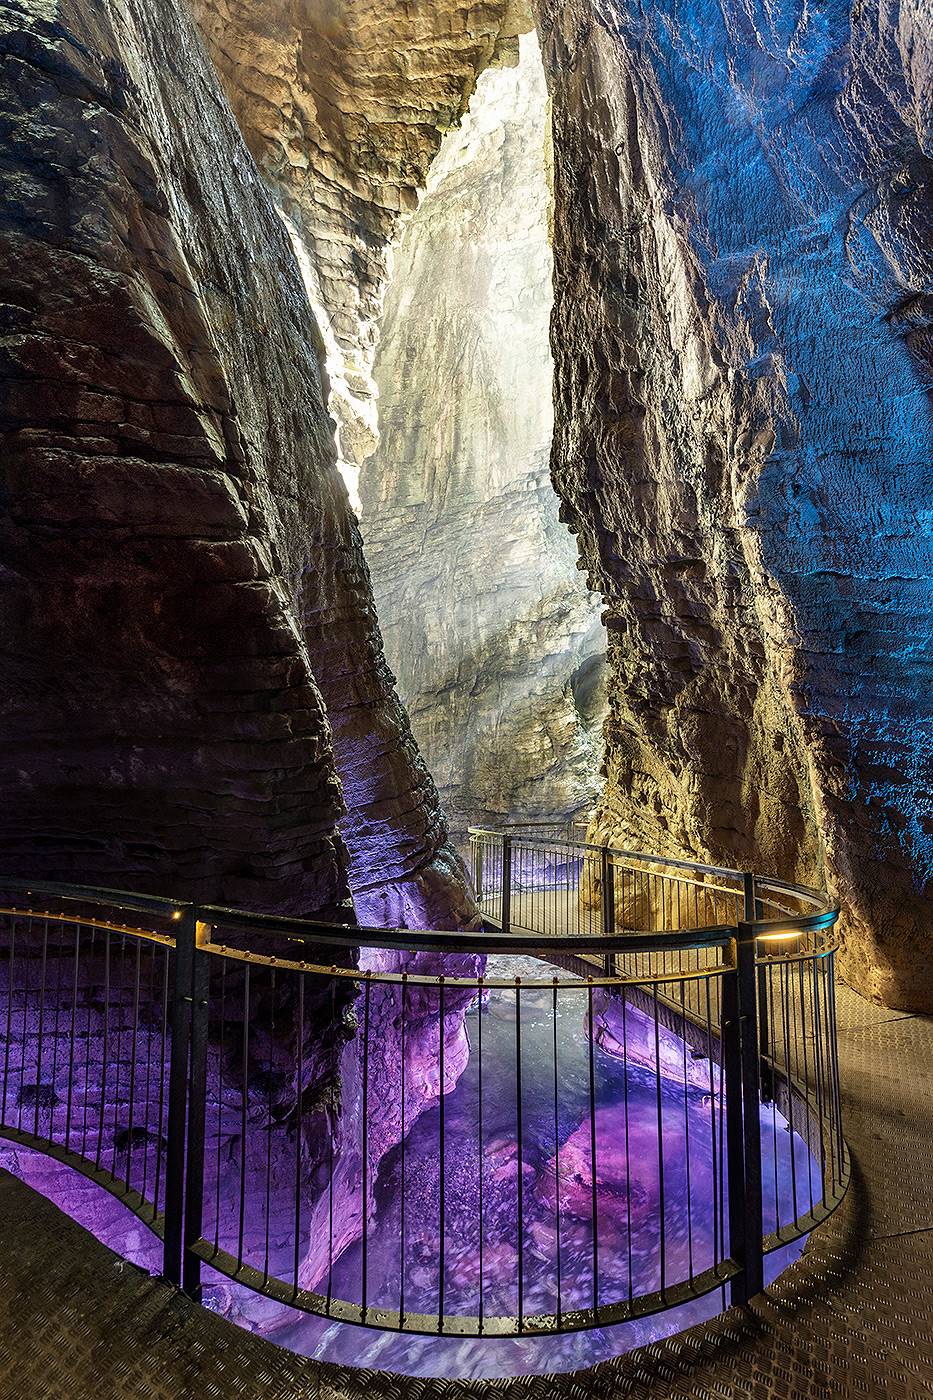 Baitone Alpino suggest: Parco Grotta cascate del Varone